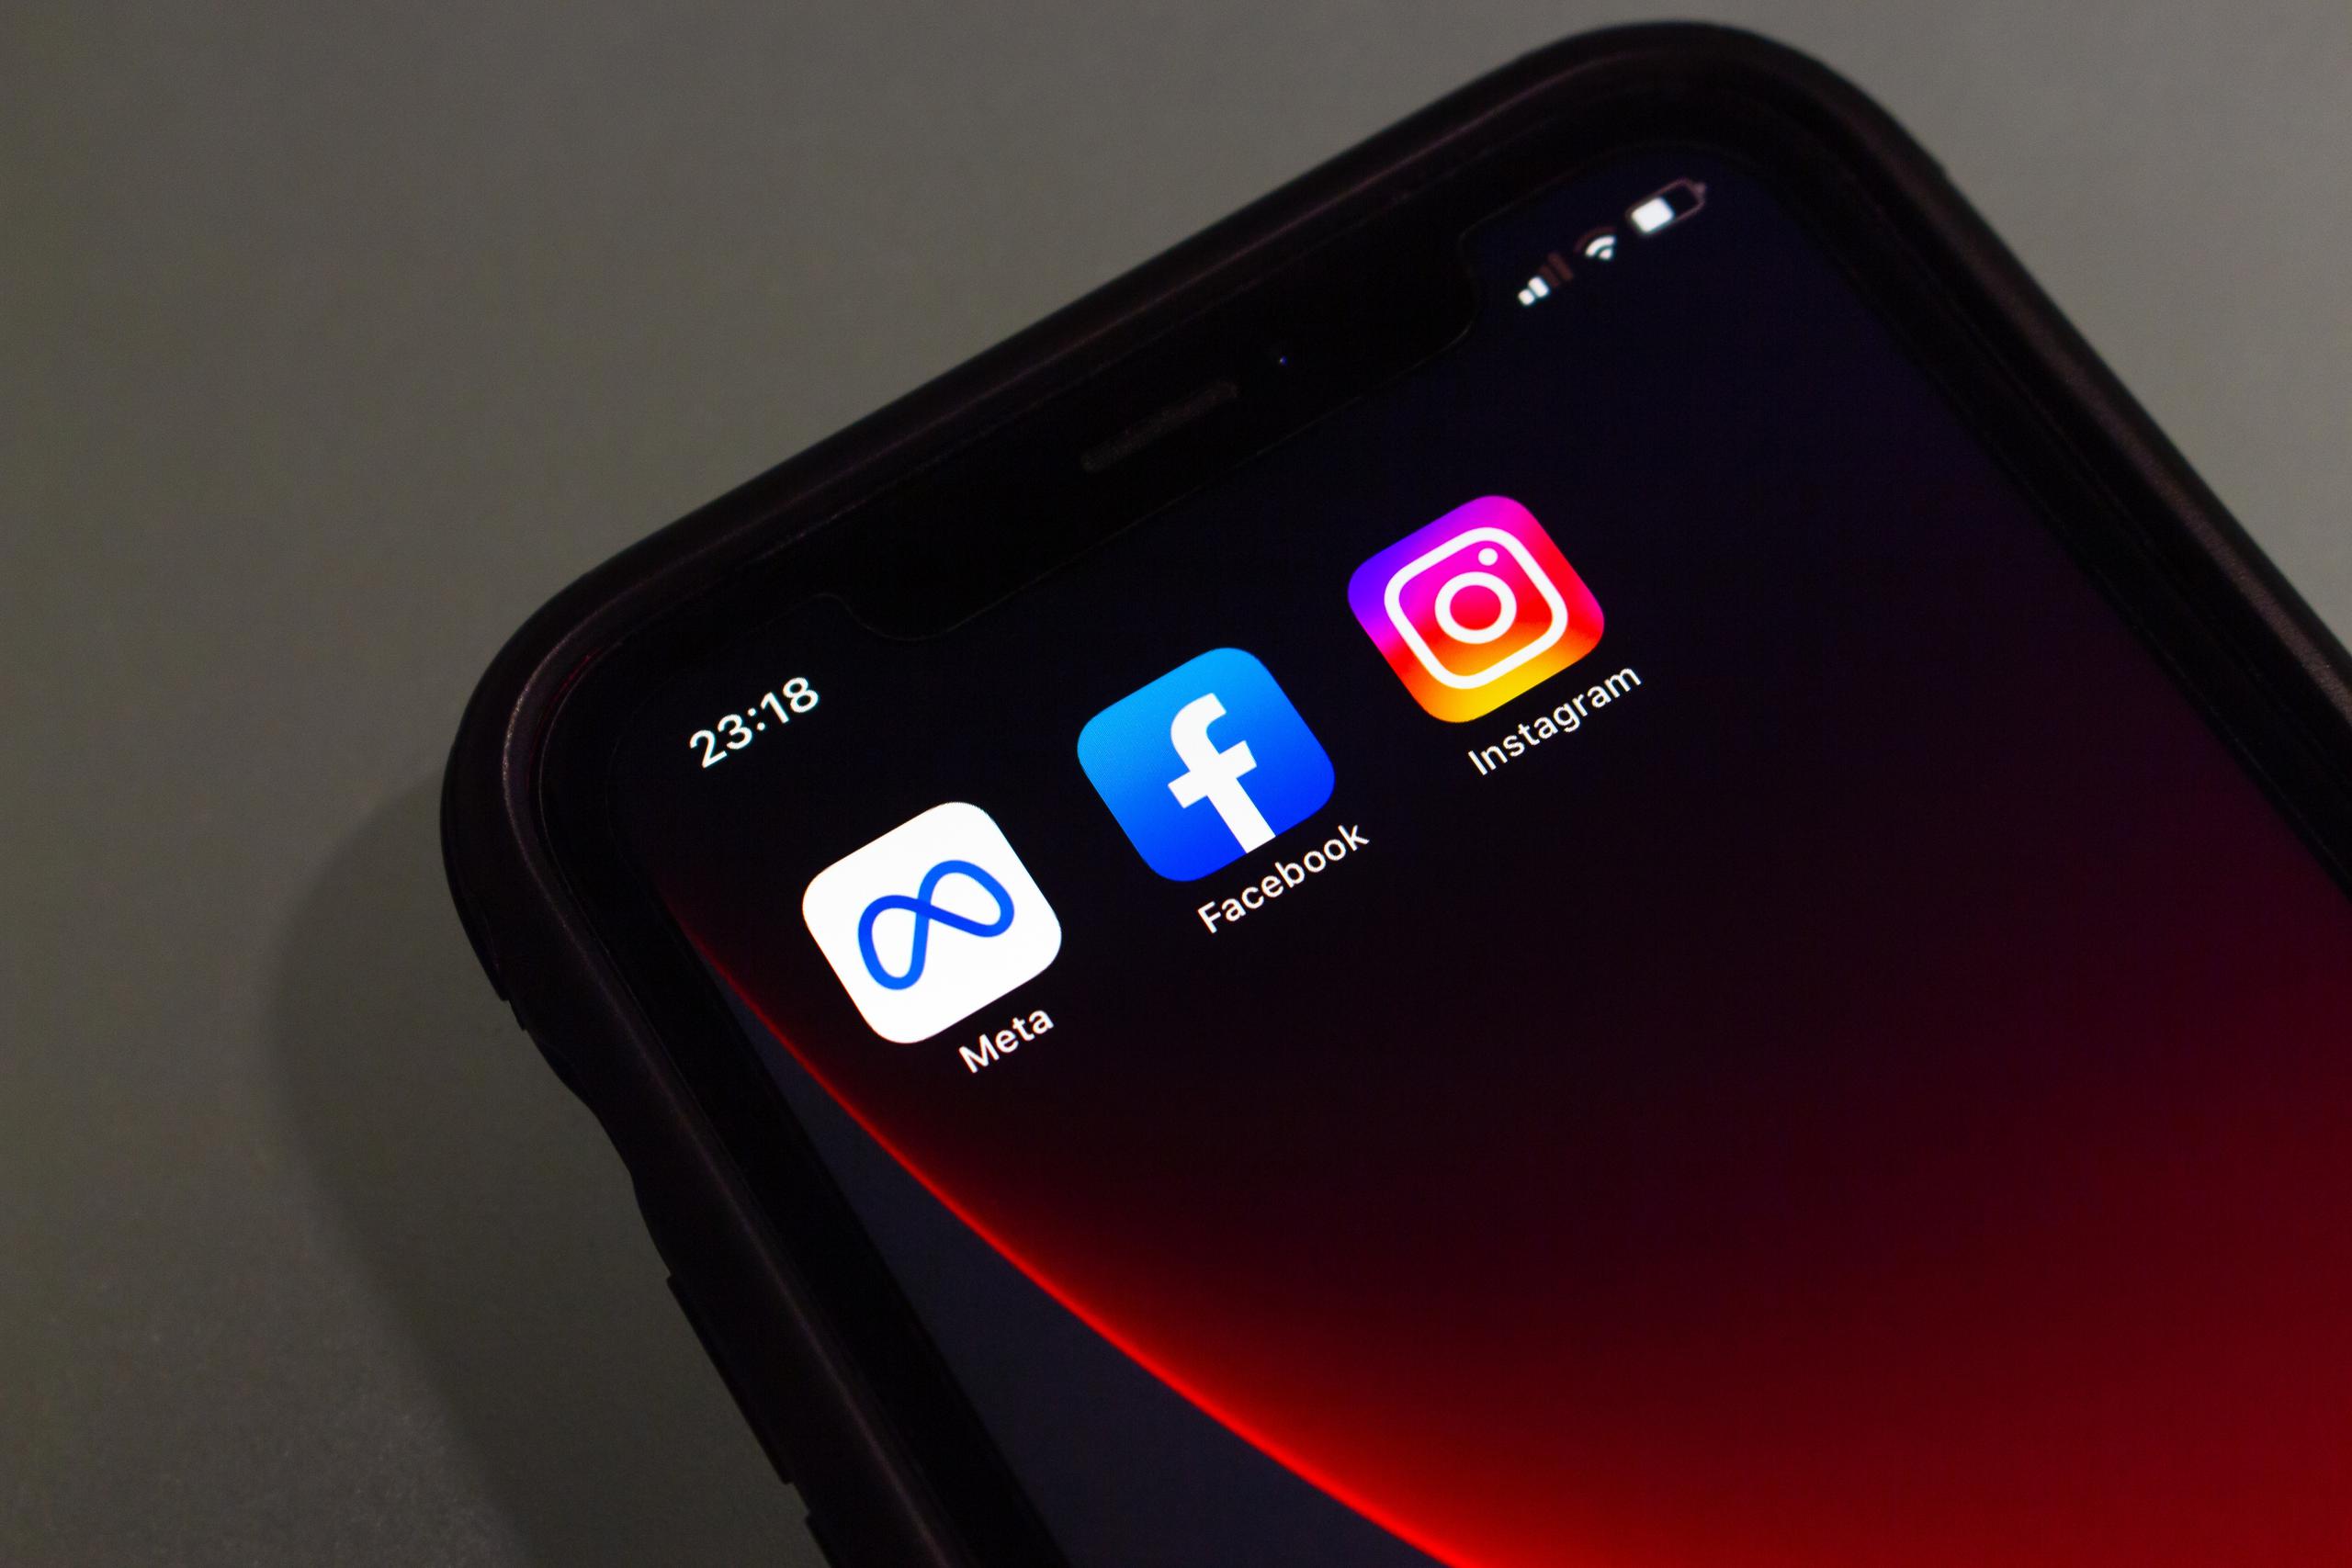 Imagen que muestra los iconos de las aplicaciones de Facebook e Instagram, ambas propiedad de Meta, en la pantalla de un iPhone.